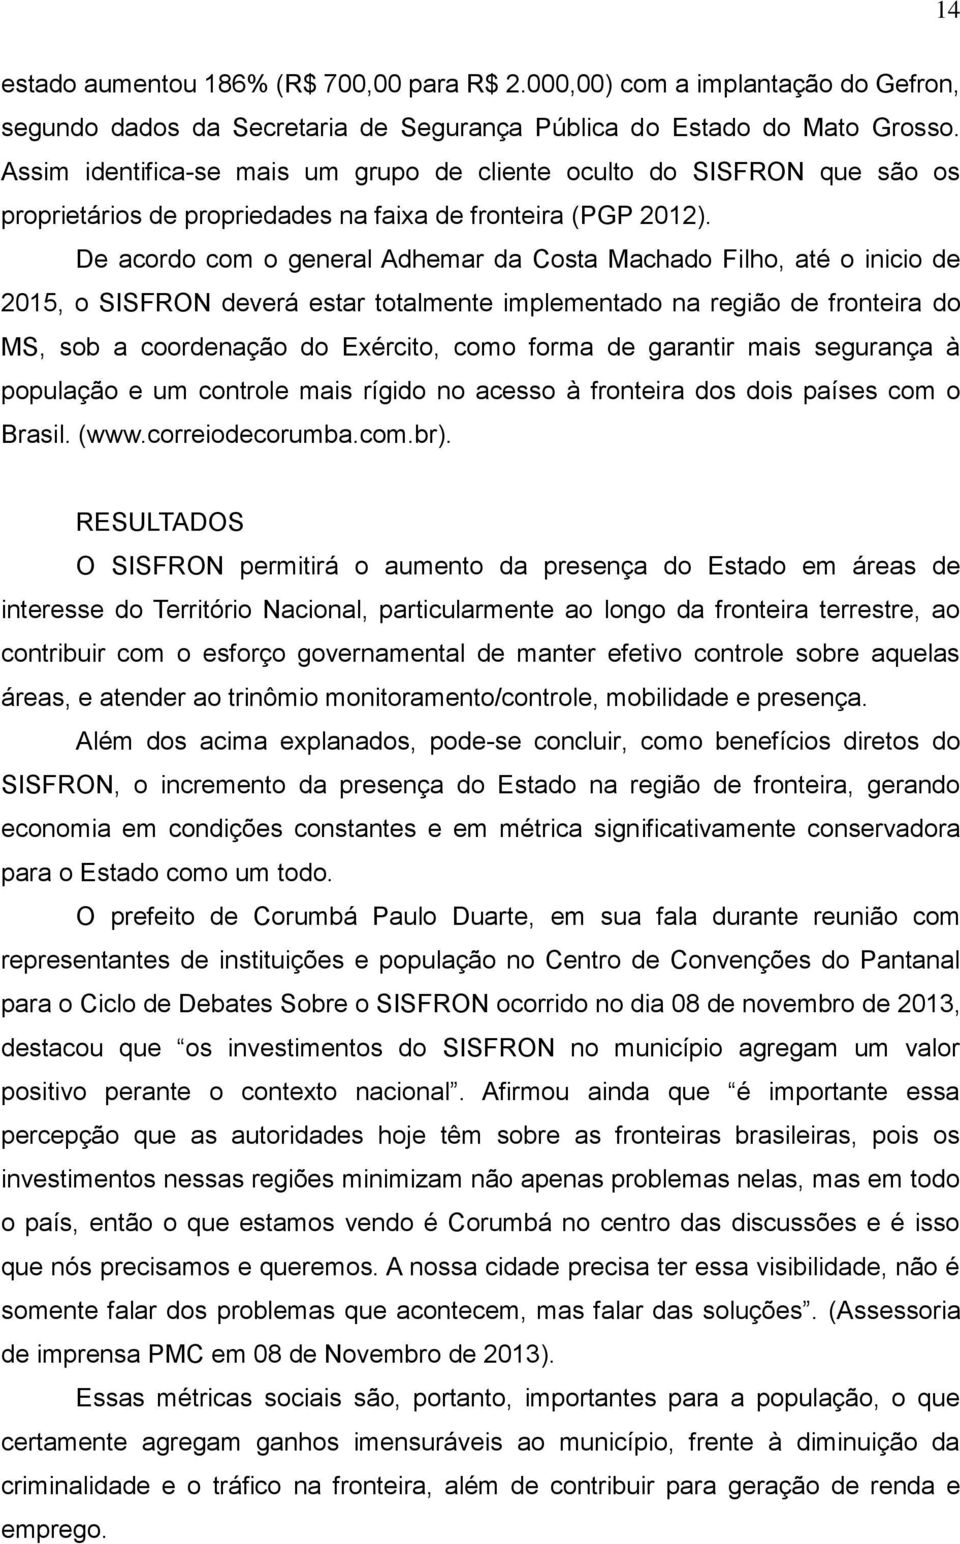 De acordo com o general Adhemar da Costa Machado Filho, até o inicio de 2015, o SISFRON deverá estar totalmente implementado na região de fronteira do MS, sob a coordenação do Exército, como forma de